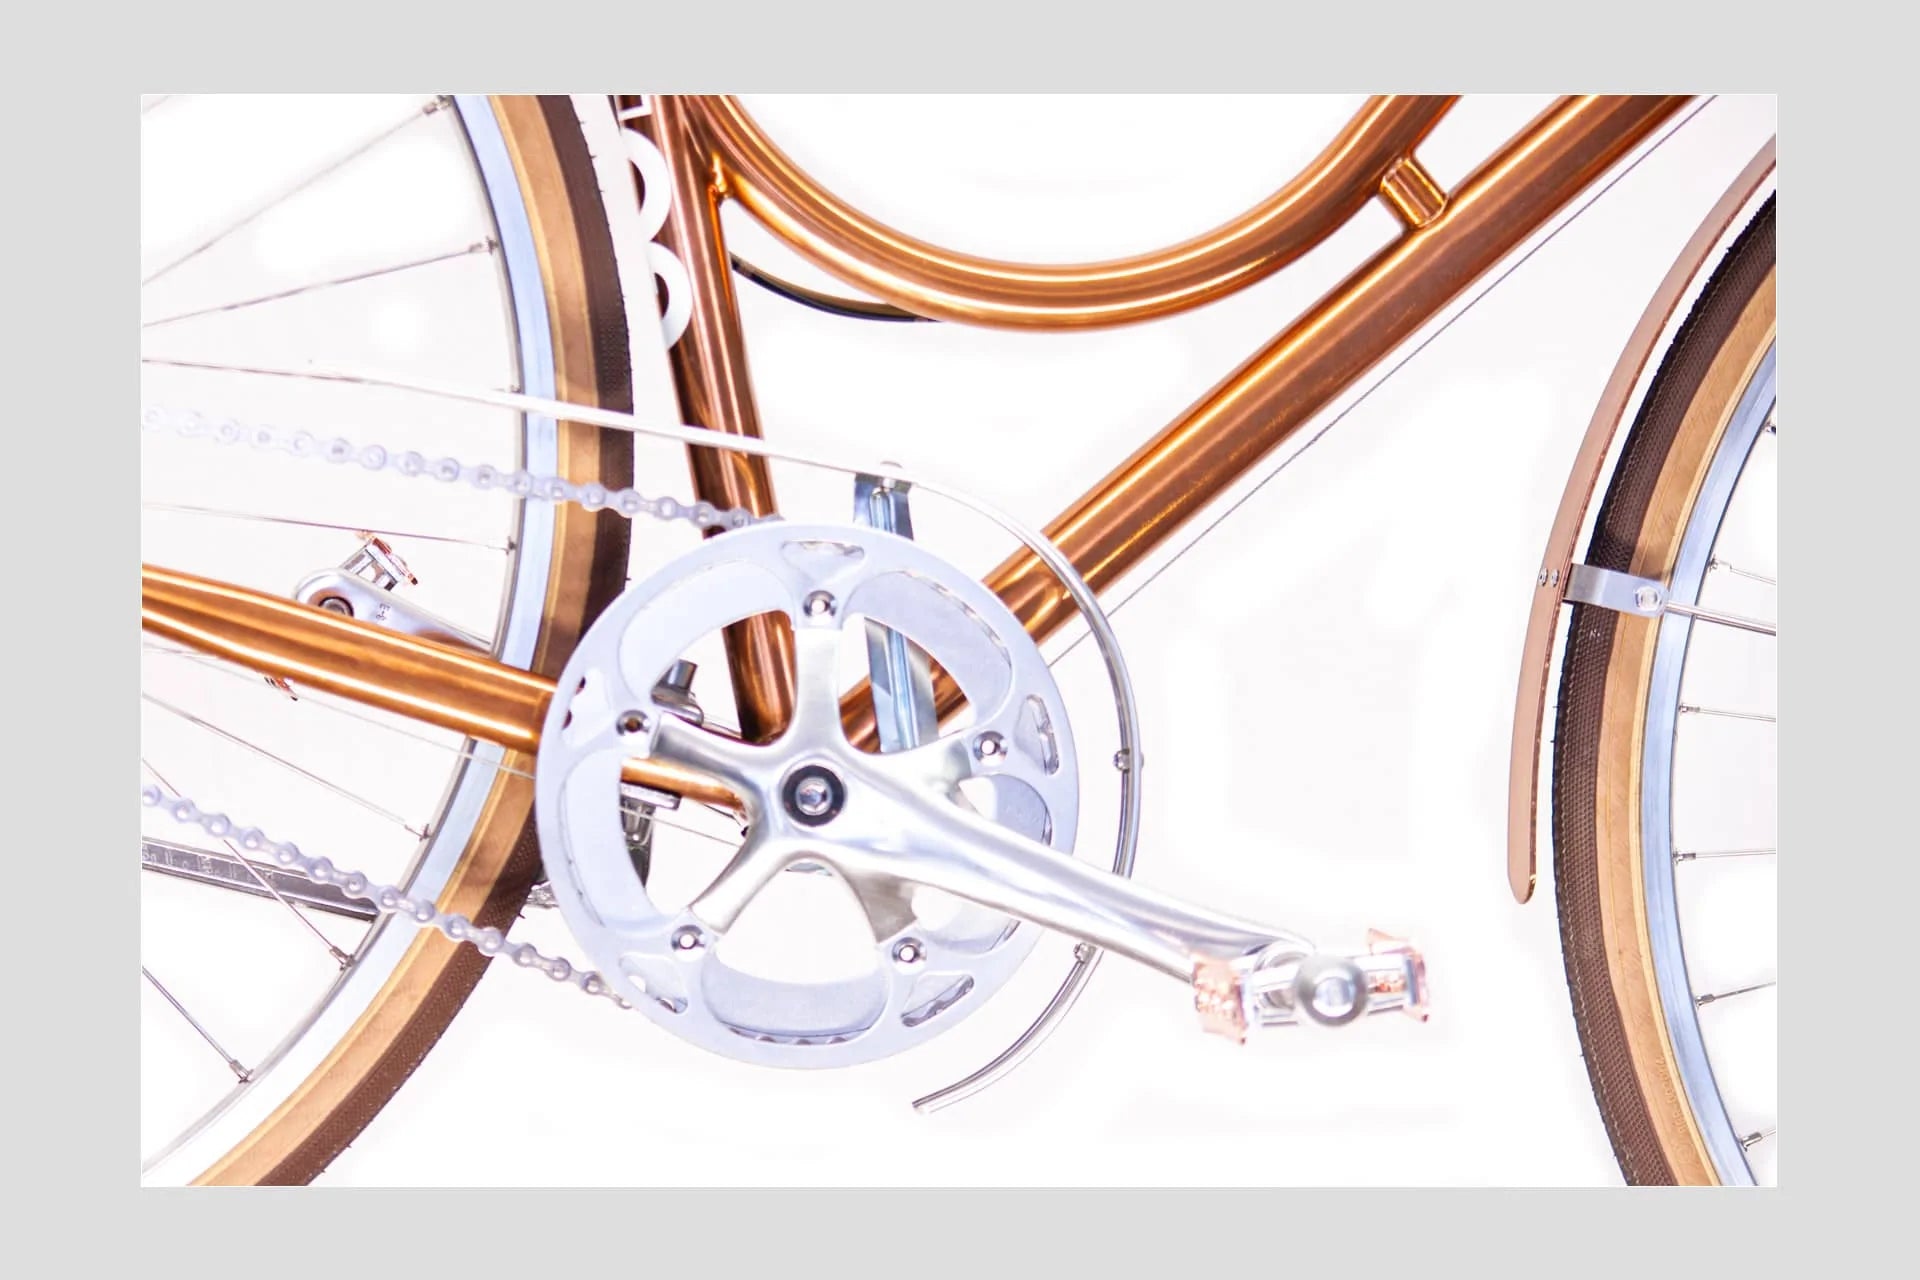 LADY - 5gear - Copper - GOrilla . urban cycling